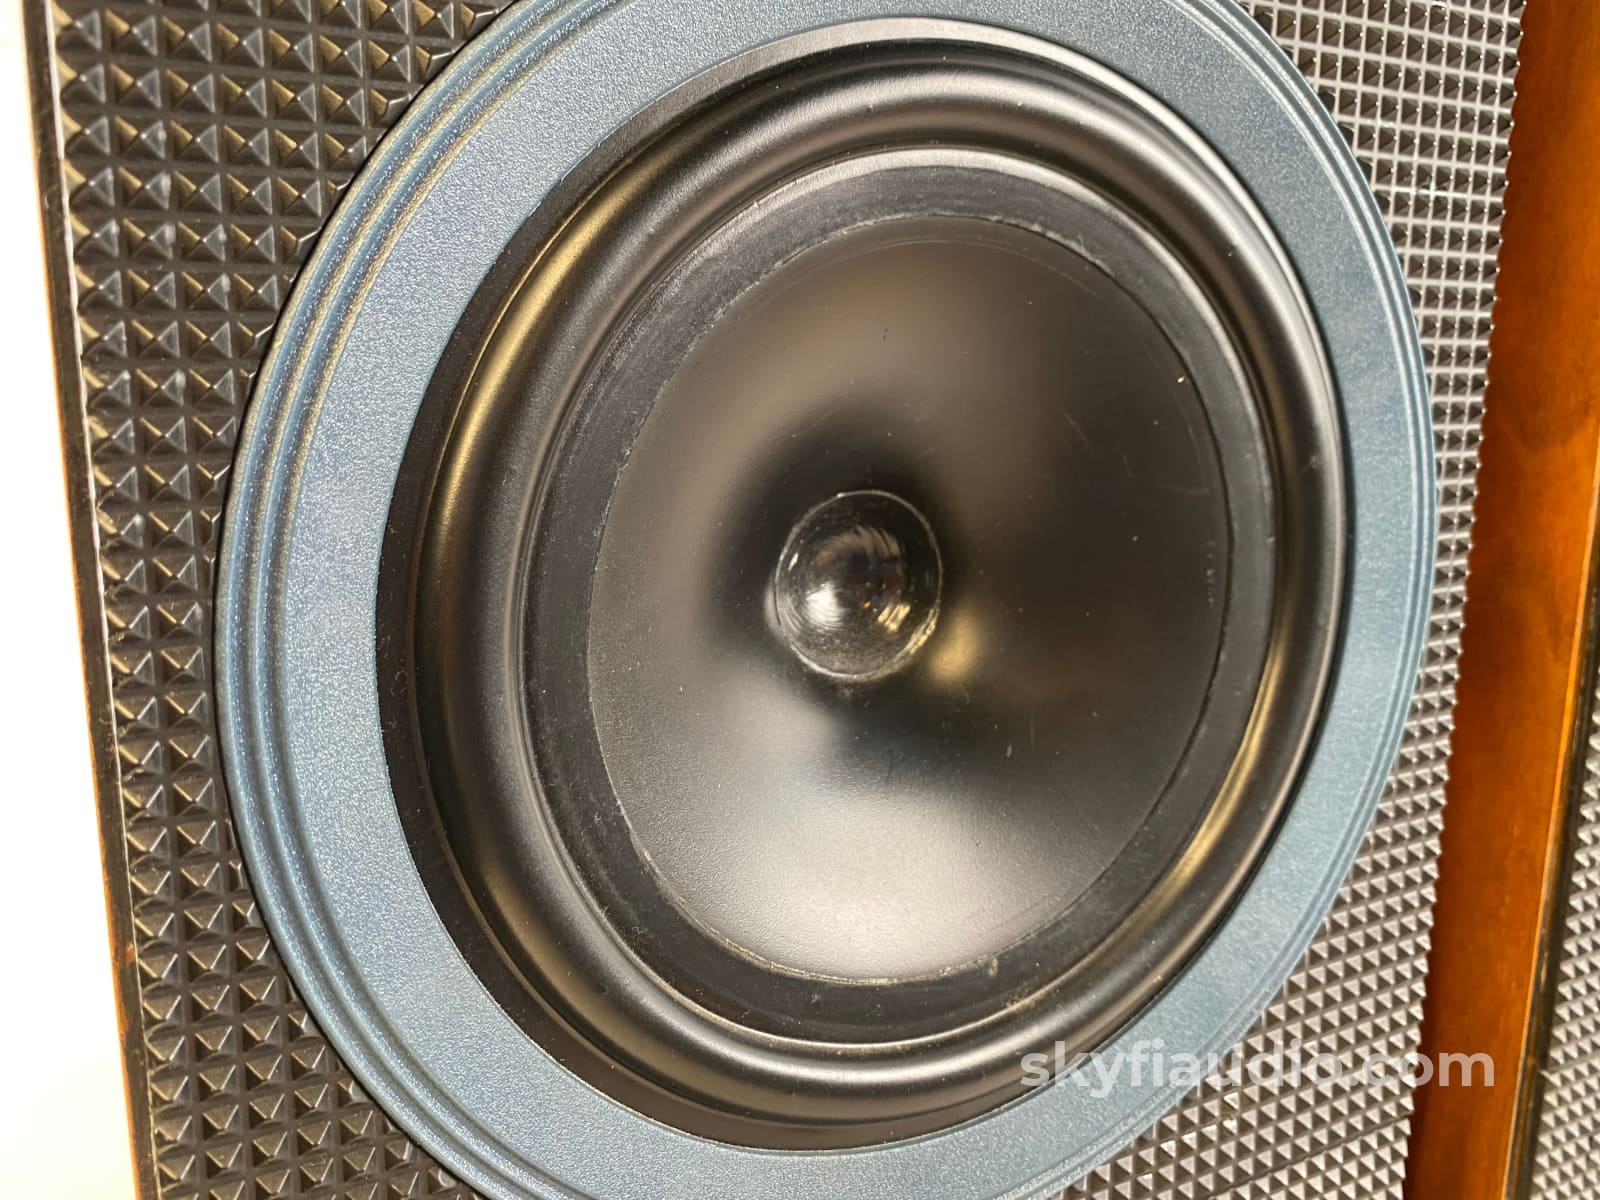 Bowers & Wilkins Matrix 1 Vintage Speakers - Restored